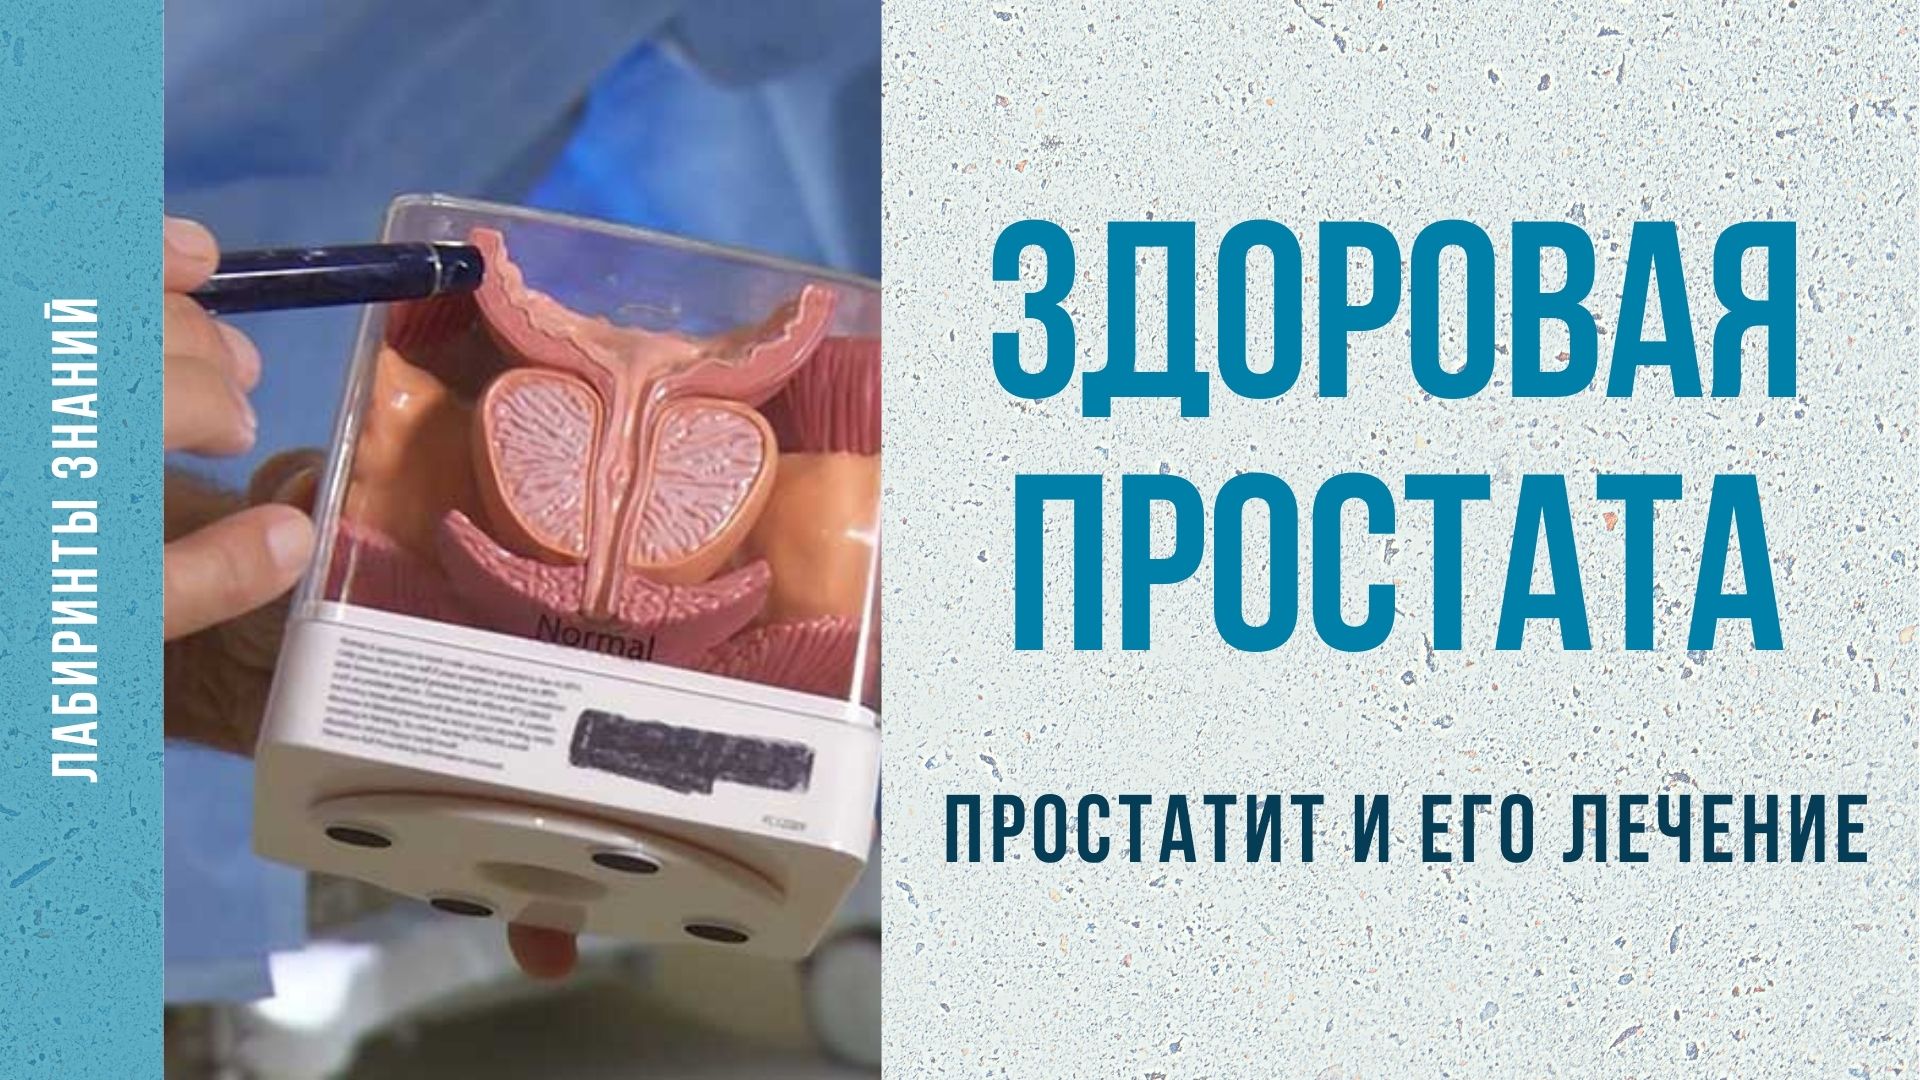 Здоровая простата _ простатит и его лечение - Лабиринты Знаний.mp4